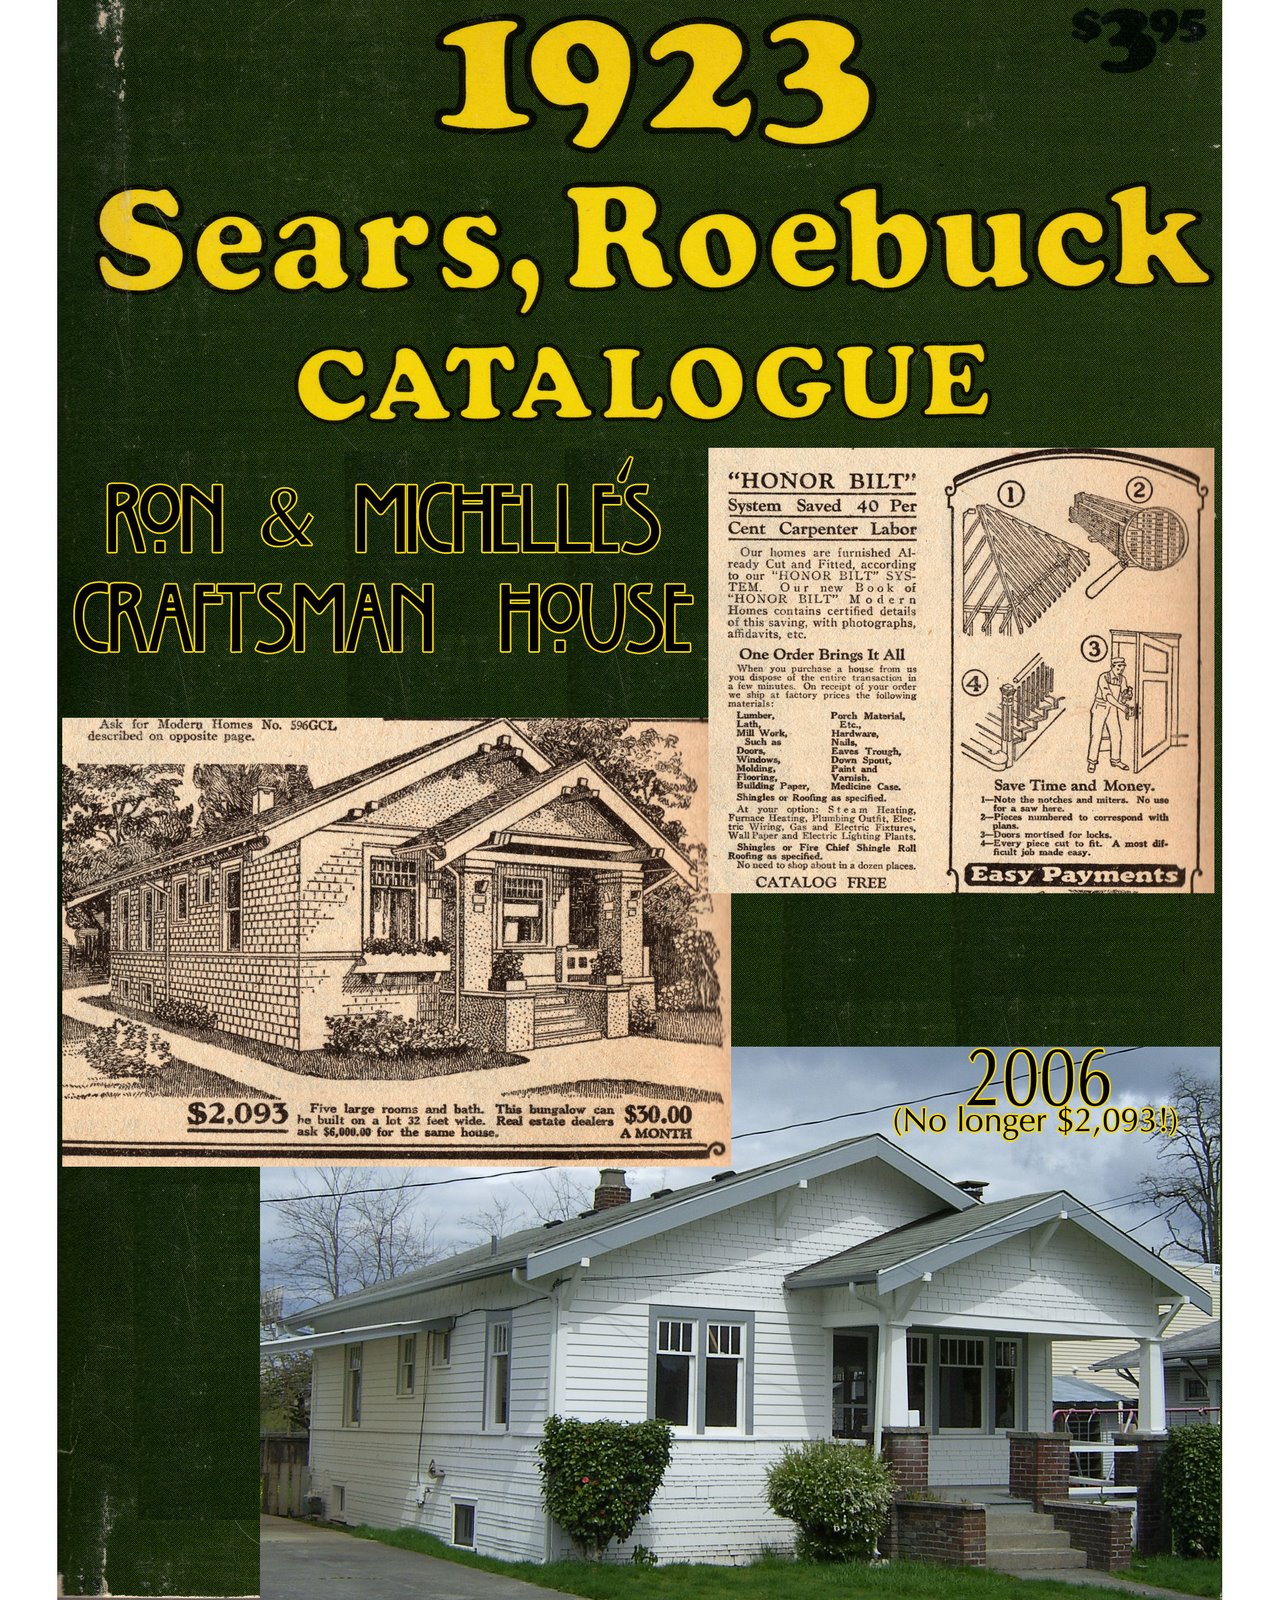 [sears-catalog-house2.jpg]